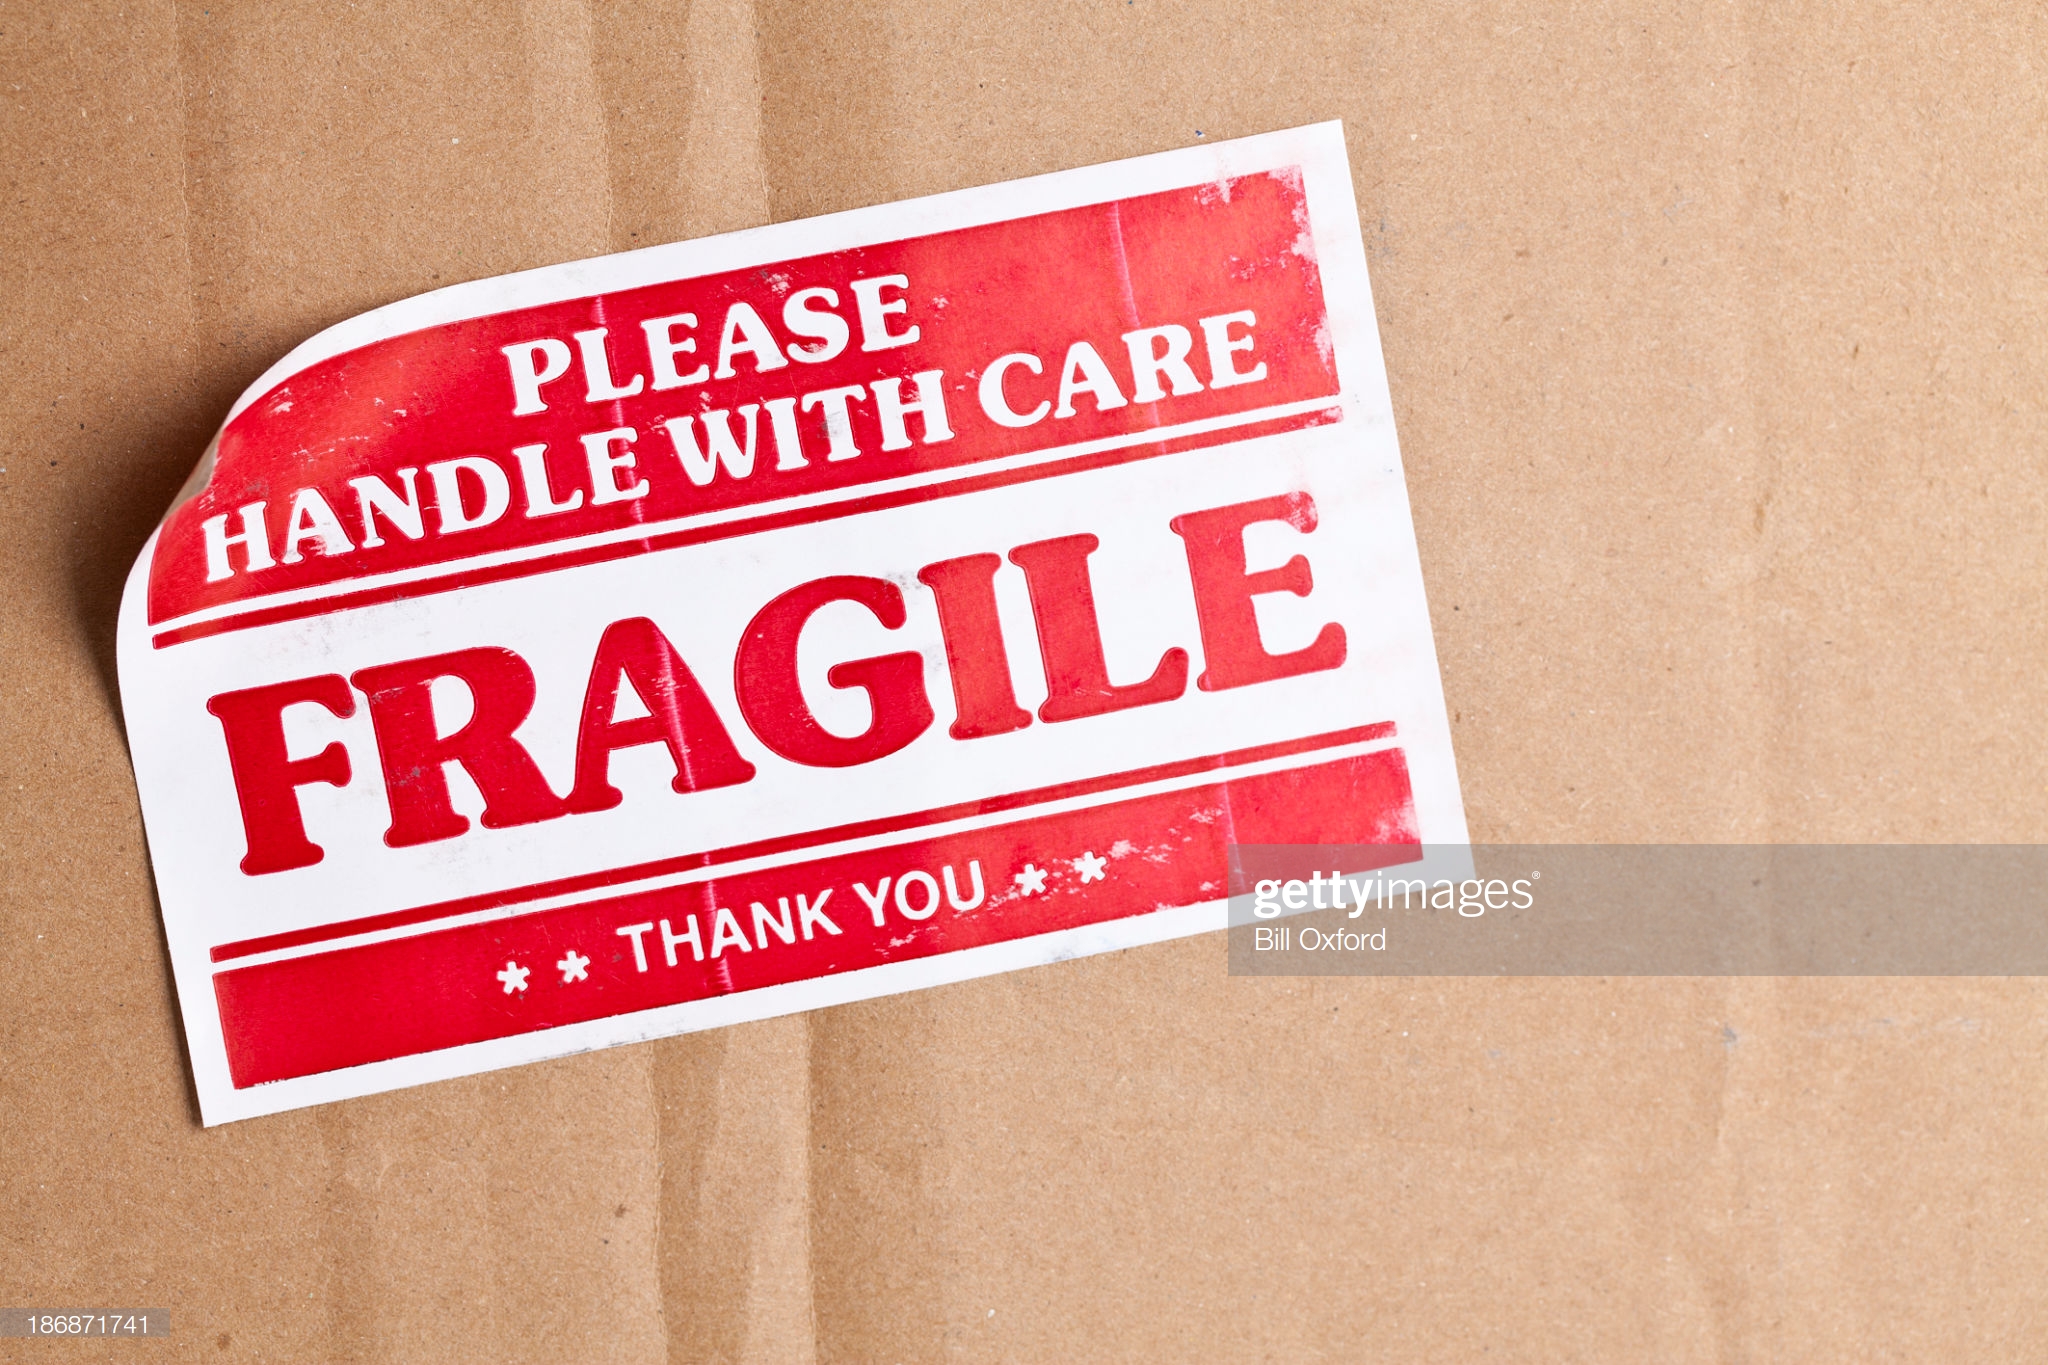 Fragile Label on cardboard box